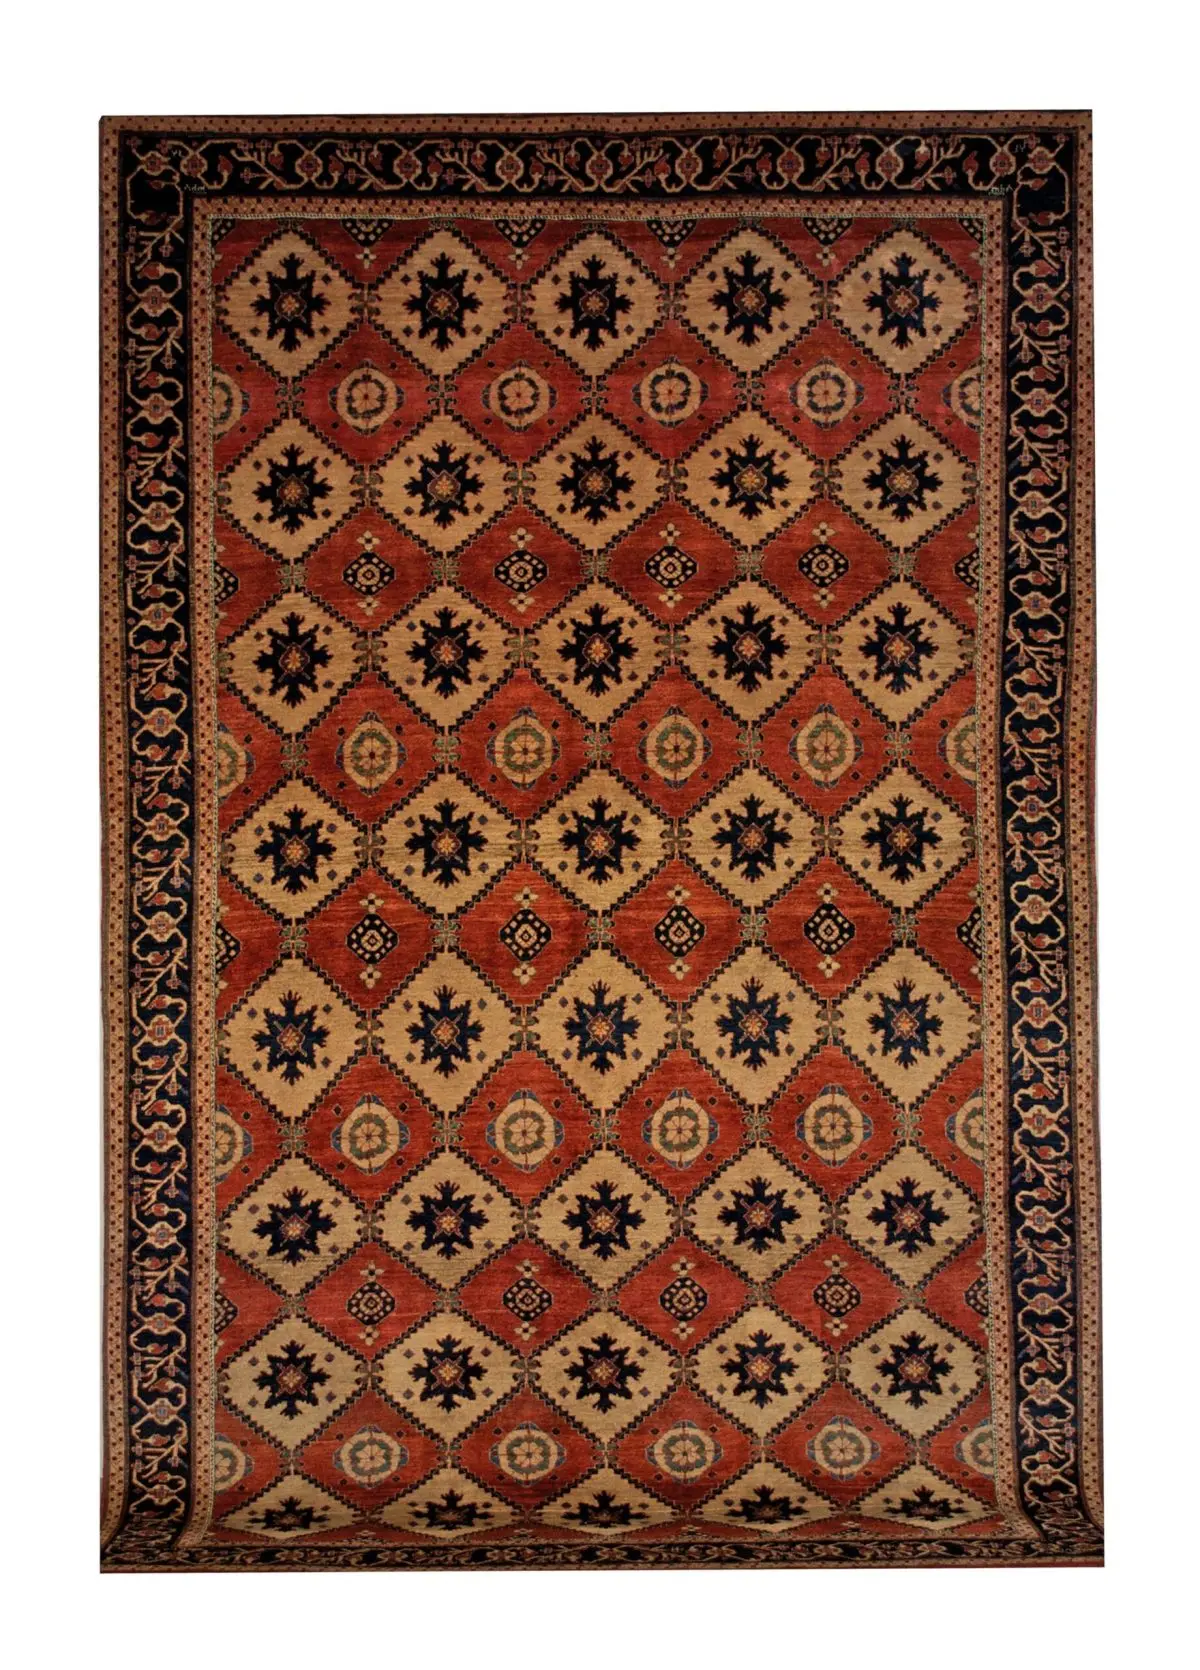 Persian Gabbeh rug 7' 1" x 11' Wool Handmade Area Rug - Shabahang Royal Carpet